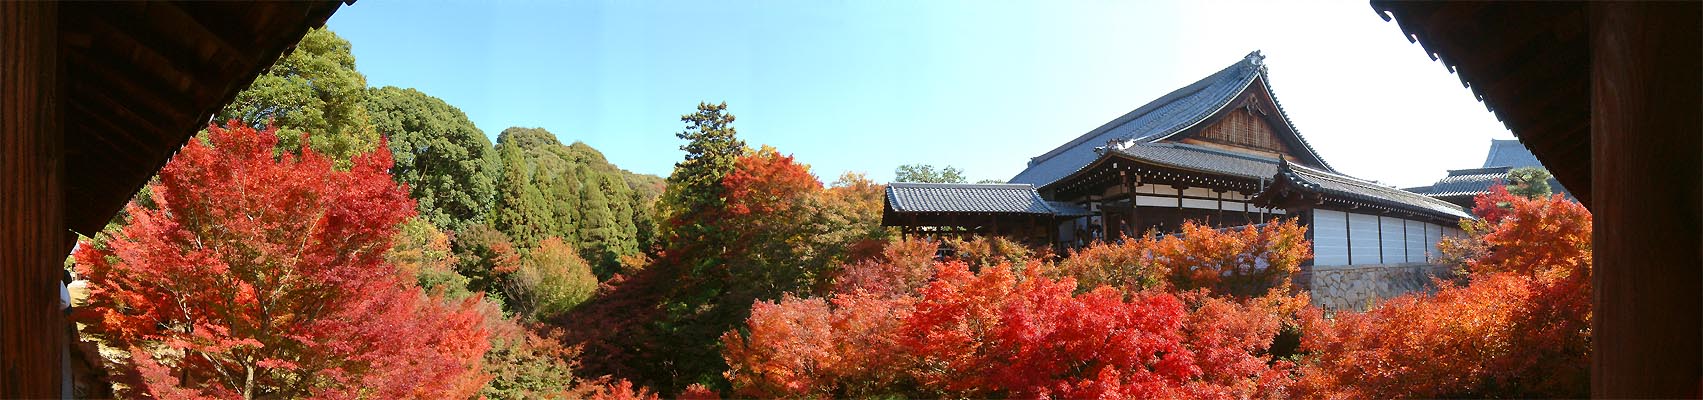 東福寺の紅葉「通天橋からの180度パノラマ写真(2)」 